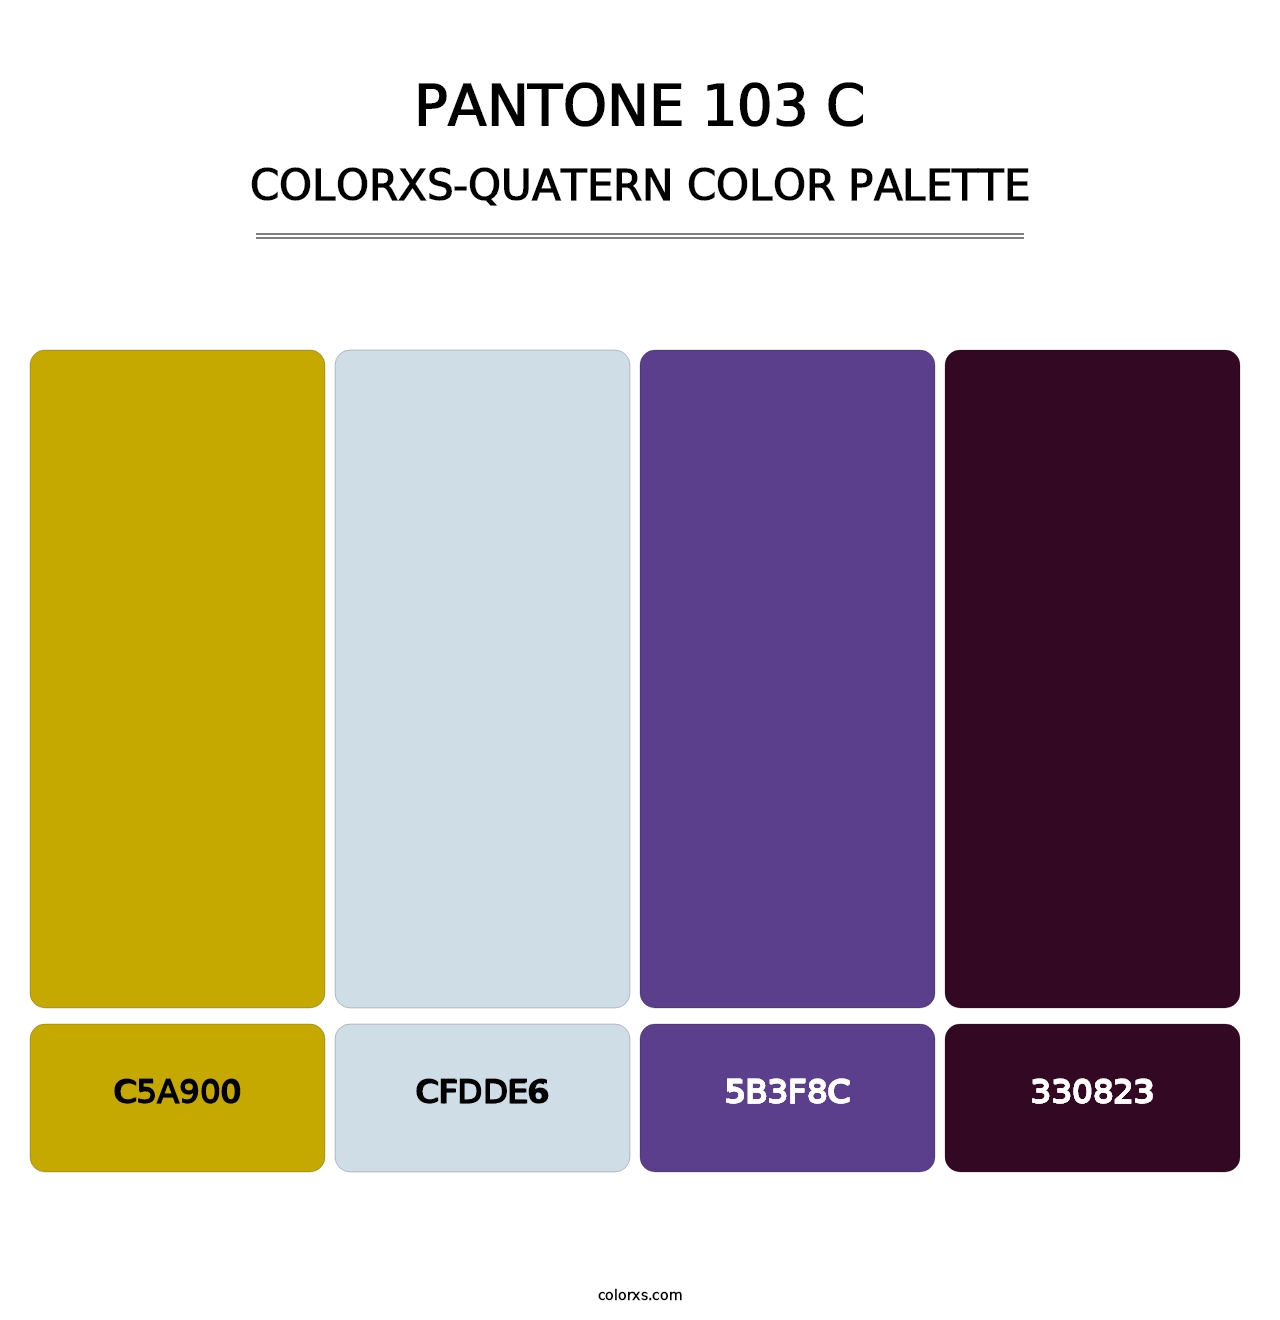 PANTONE 103 C - Colorxs Quatern Palette